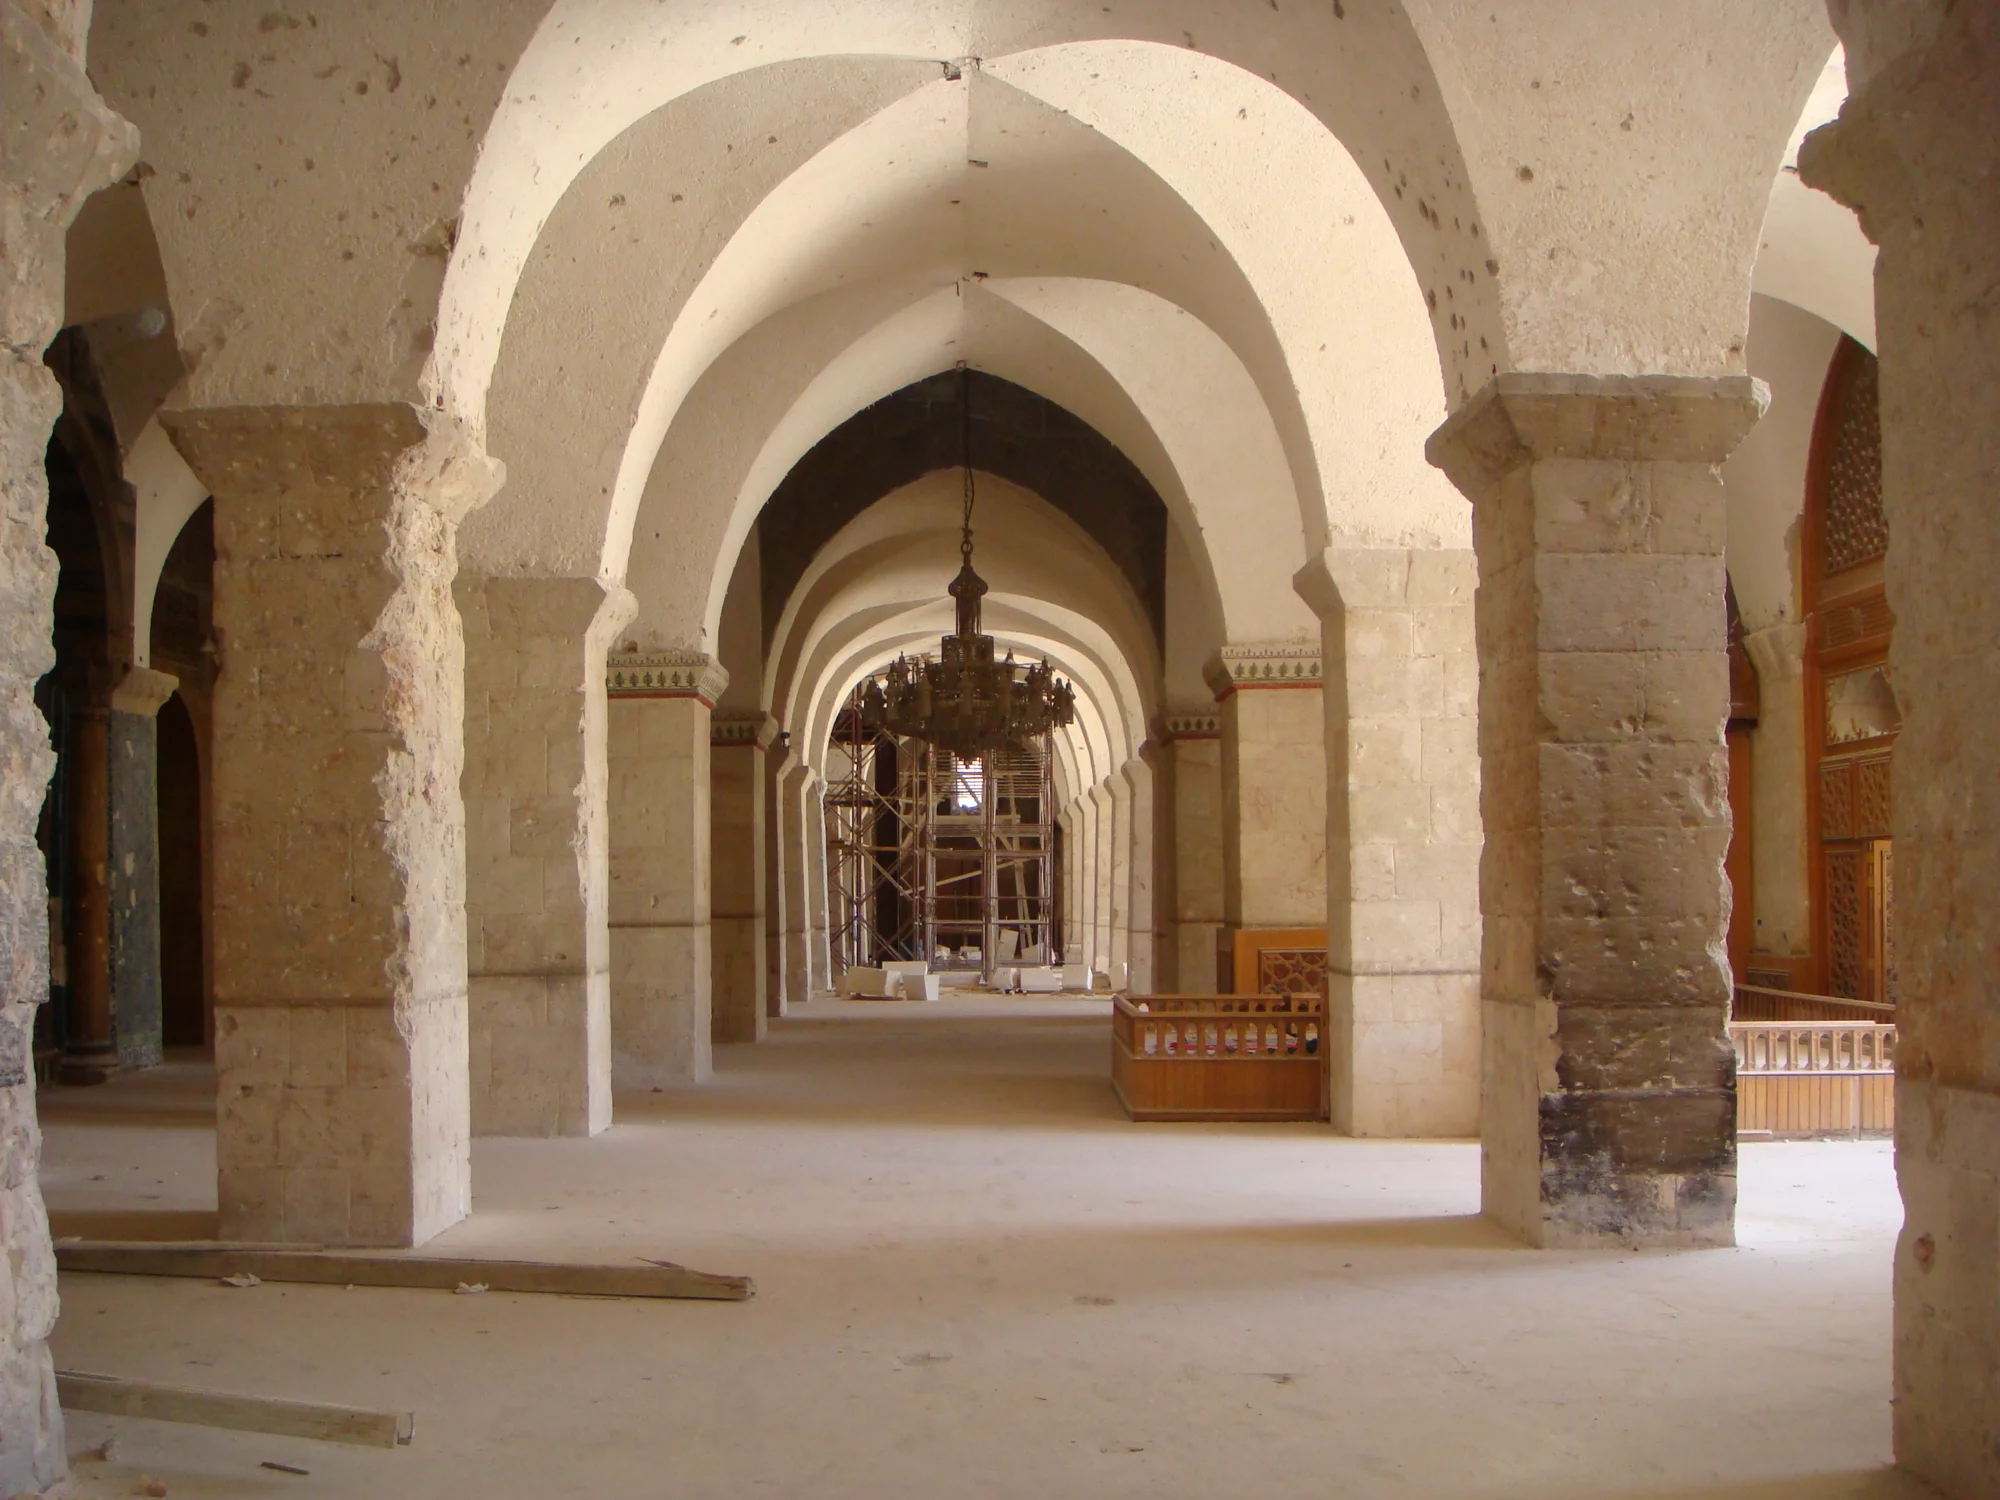 الجزء الداخلي من حرم الجامع الأموي الكبير في حلب أثناء ترميمه بعد أن دمرته الحرب - منظر نحو الغرب